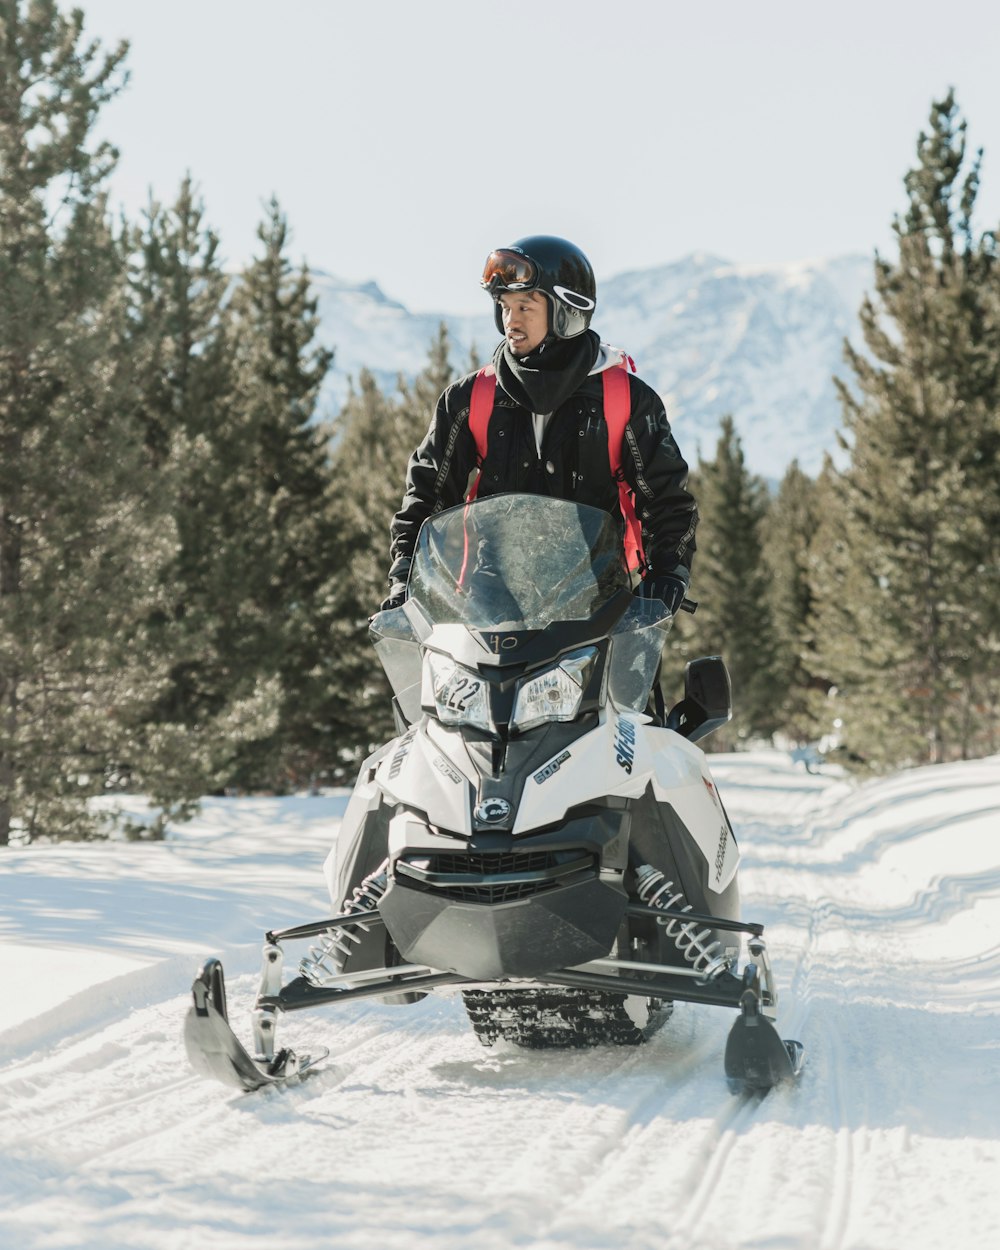 hombre con chaqueta de invierno negra conduciendo una moto de nieve blanca en un terreno cubierto de nieve durante el día